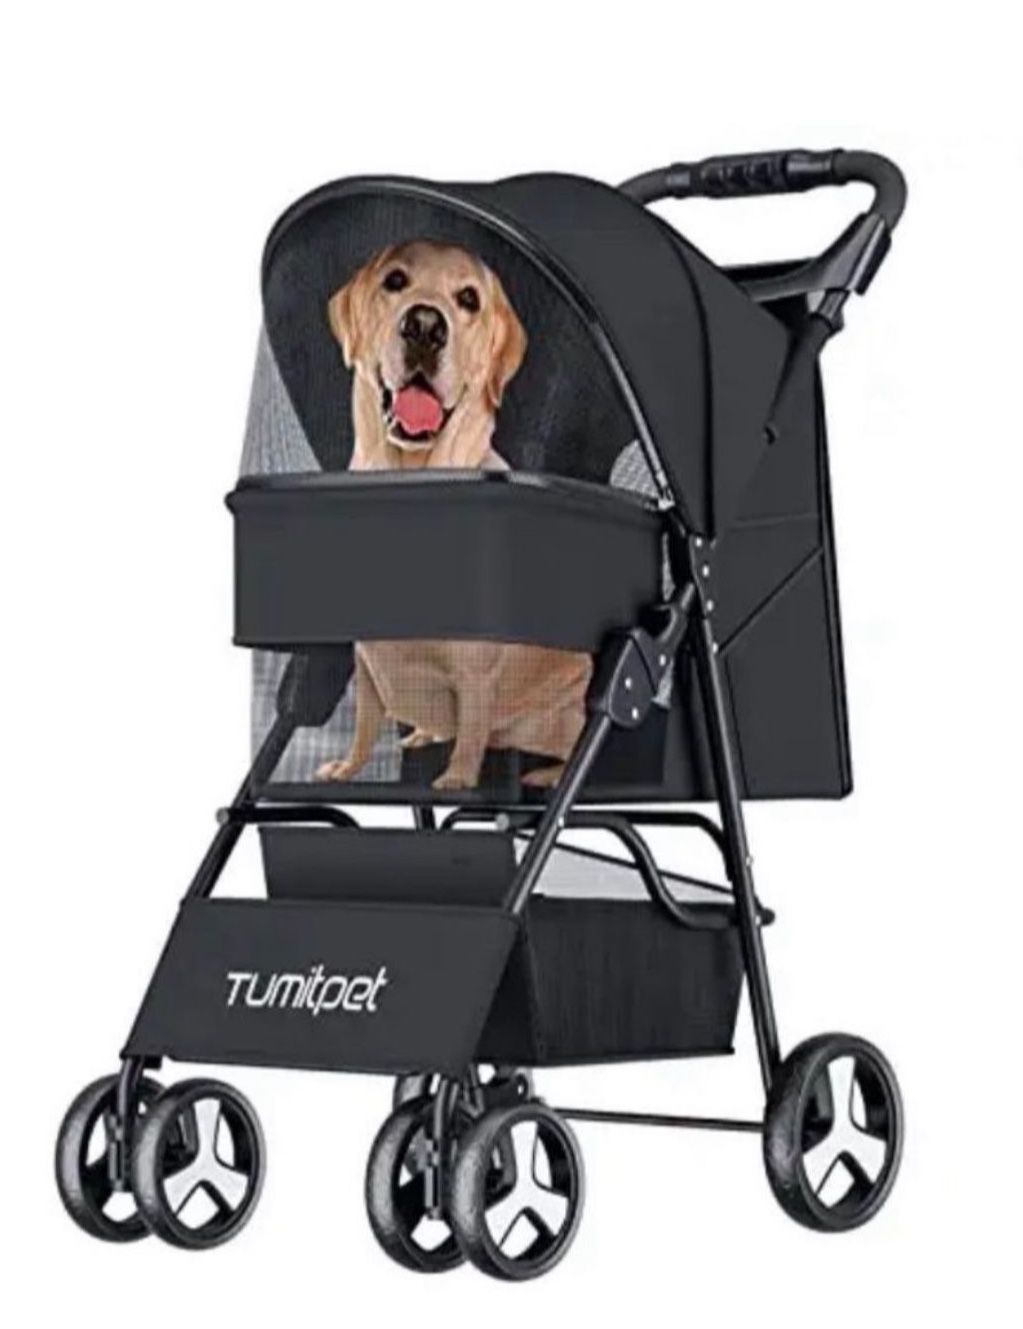 4 Wheels Folding M/L Pet Stroller Cat Dog Cage Stroller Portable Travel Carrier US In Black Color